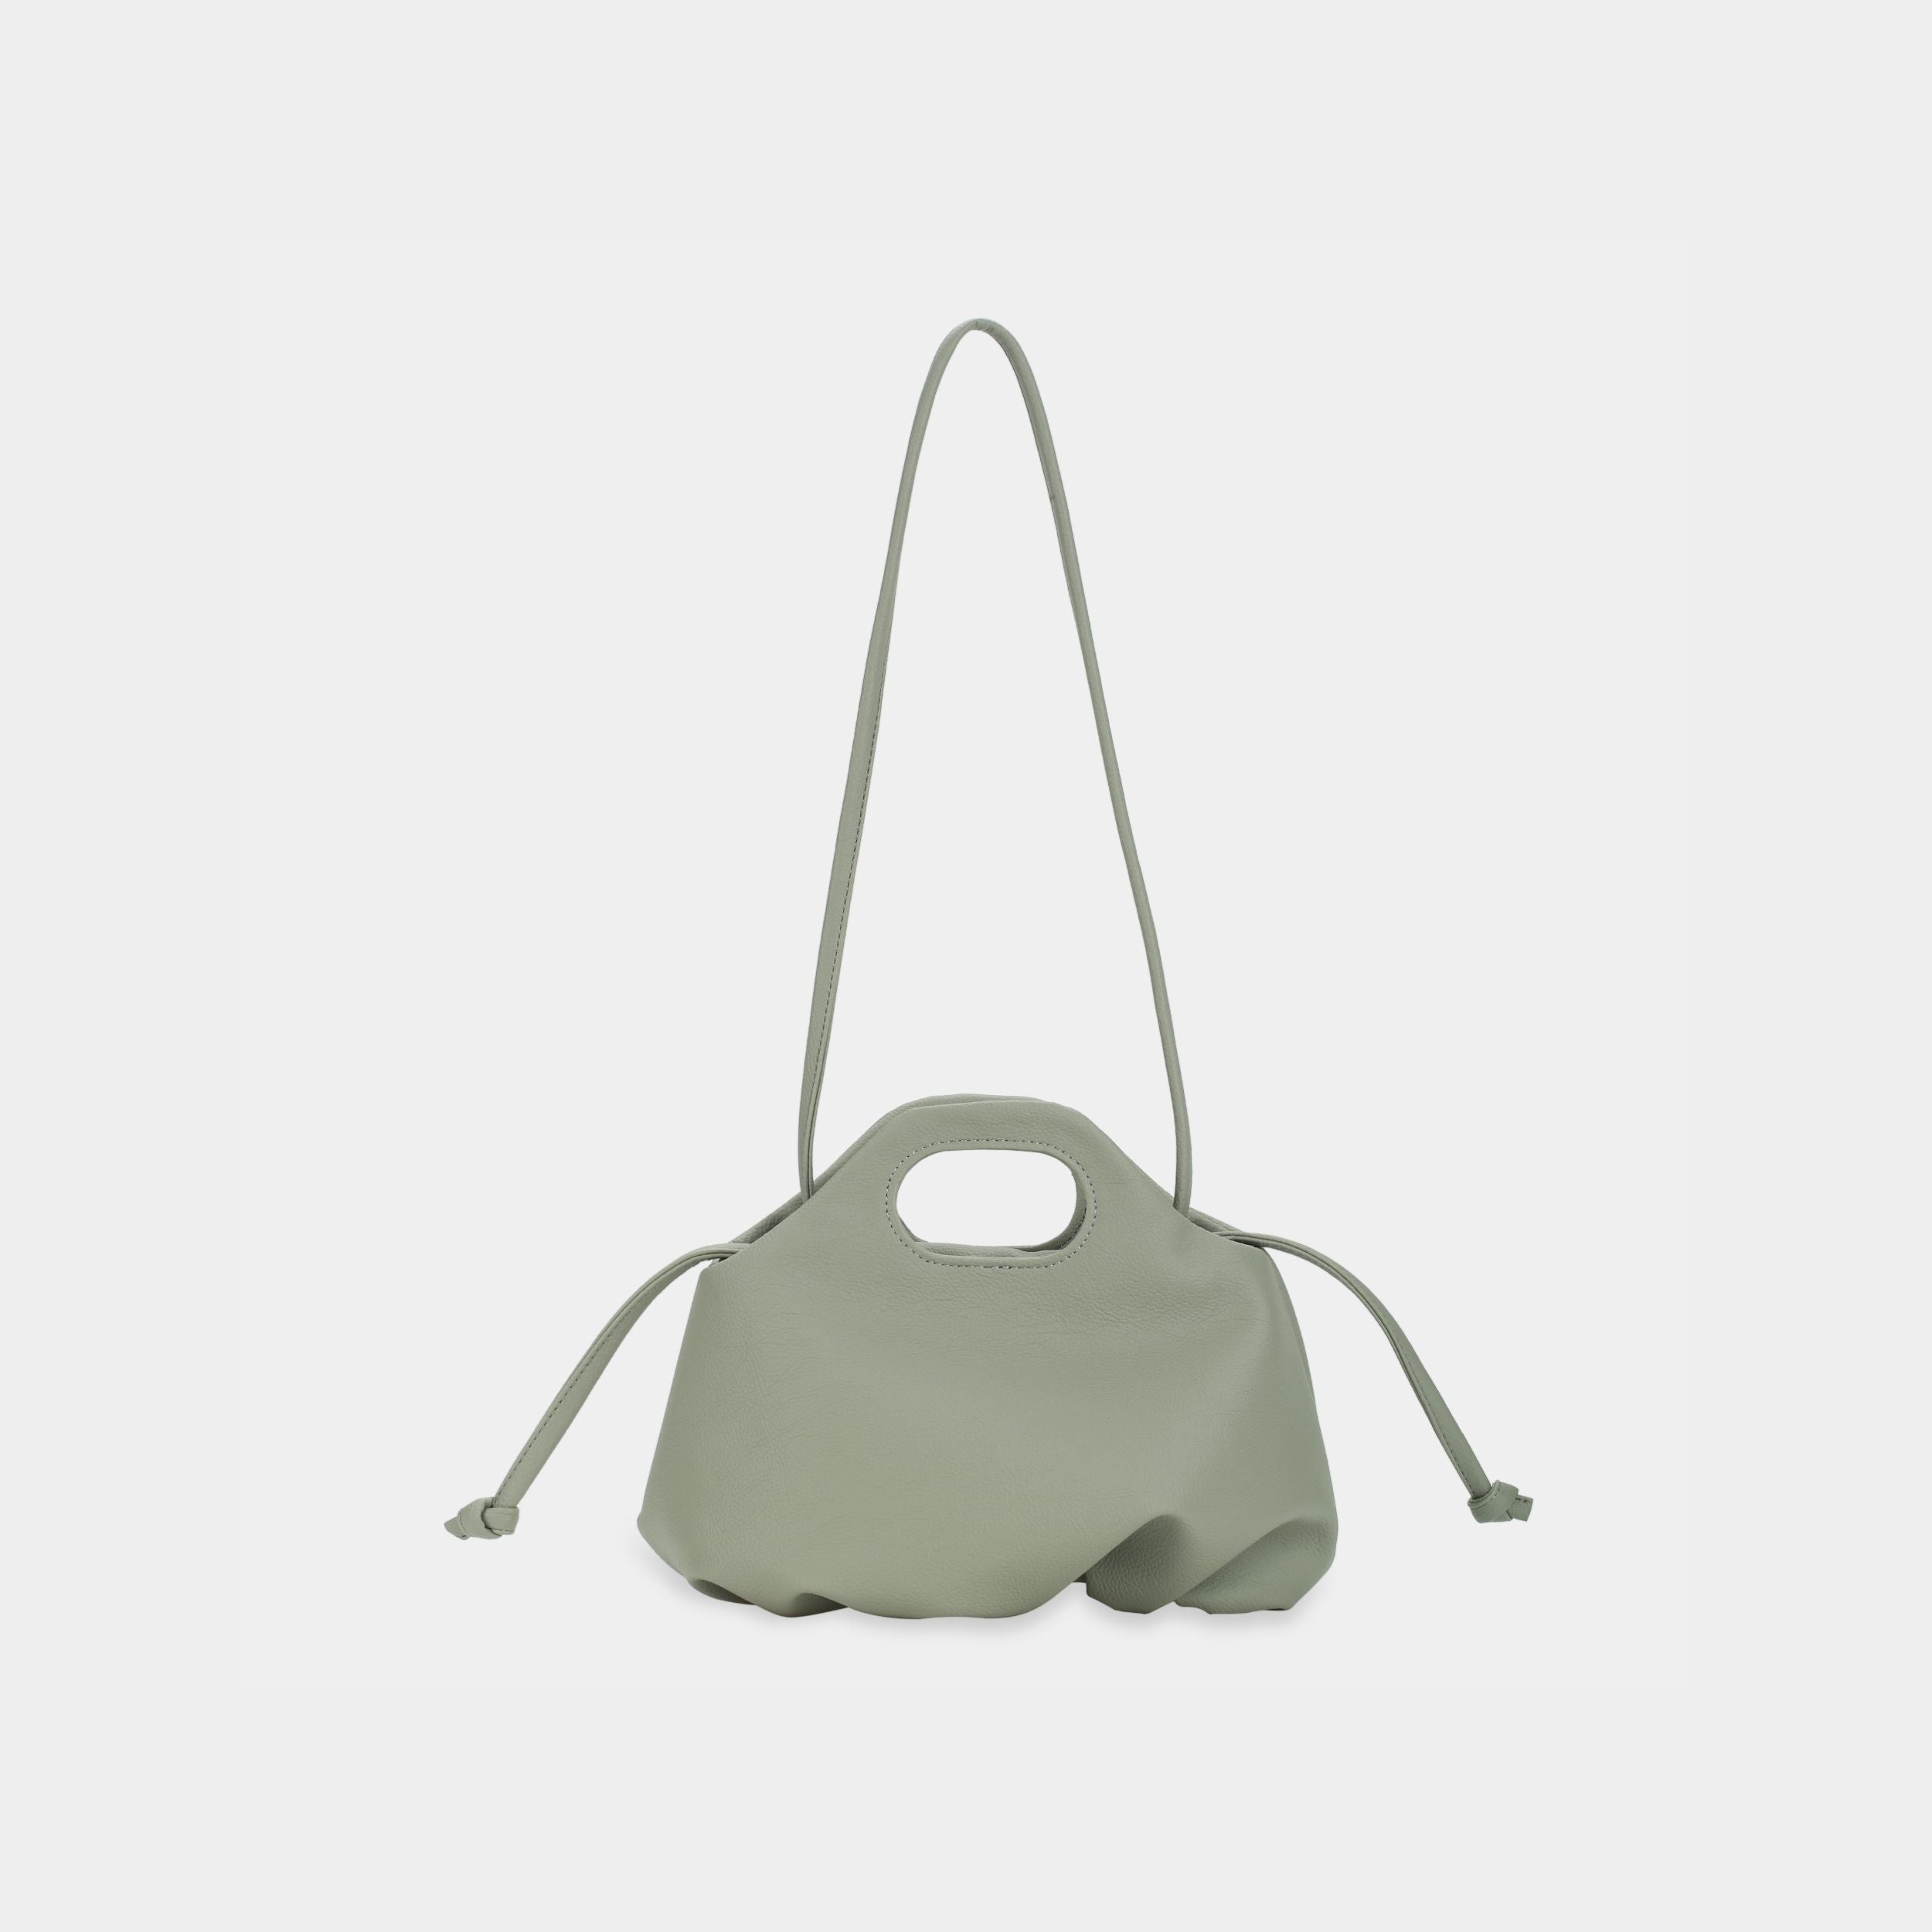 Flower M (medium) handbag in gray